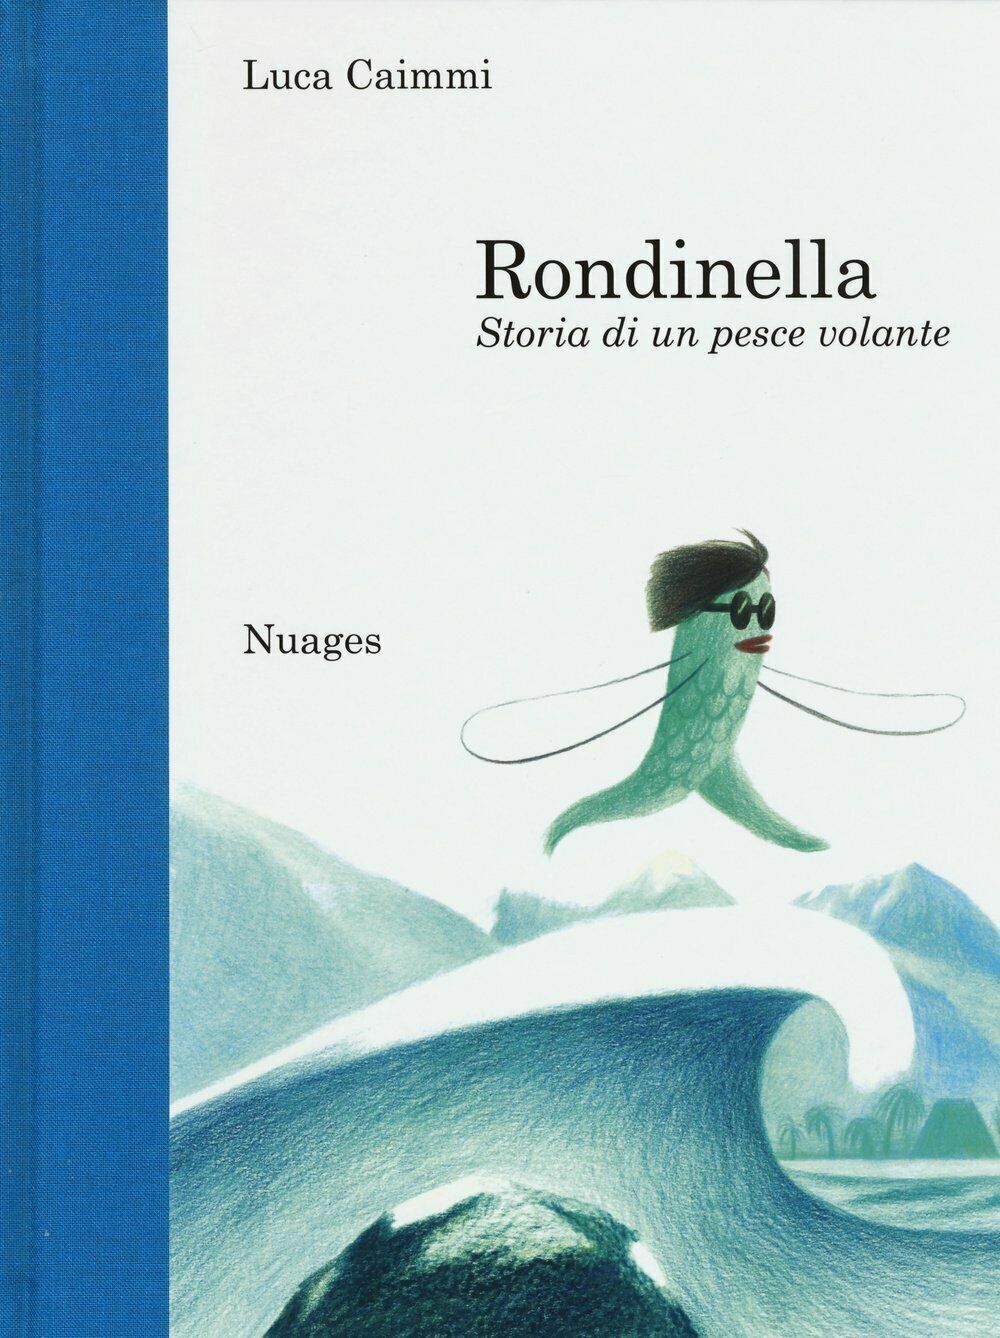 Rondinella. Storia di un pesce volante di Luca Caimmi,  2015,  Nuages